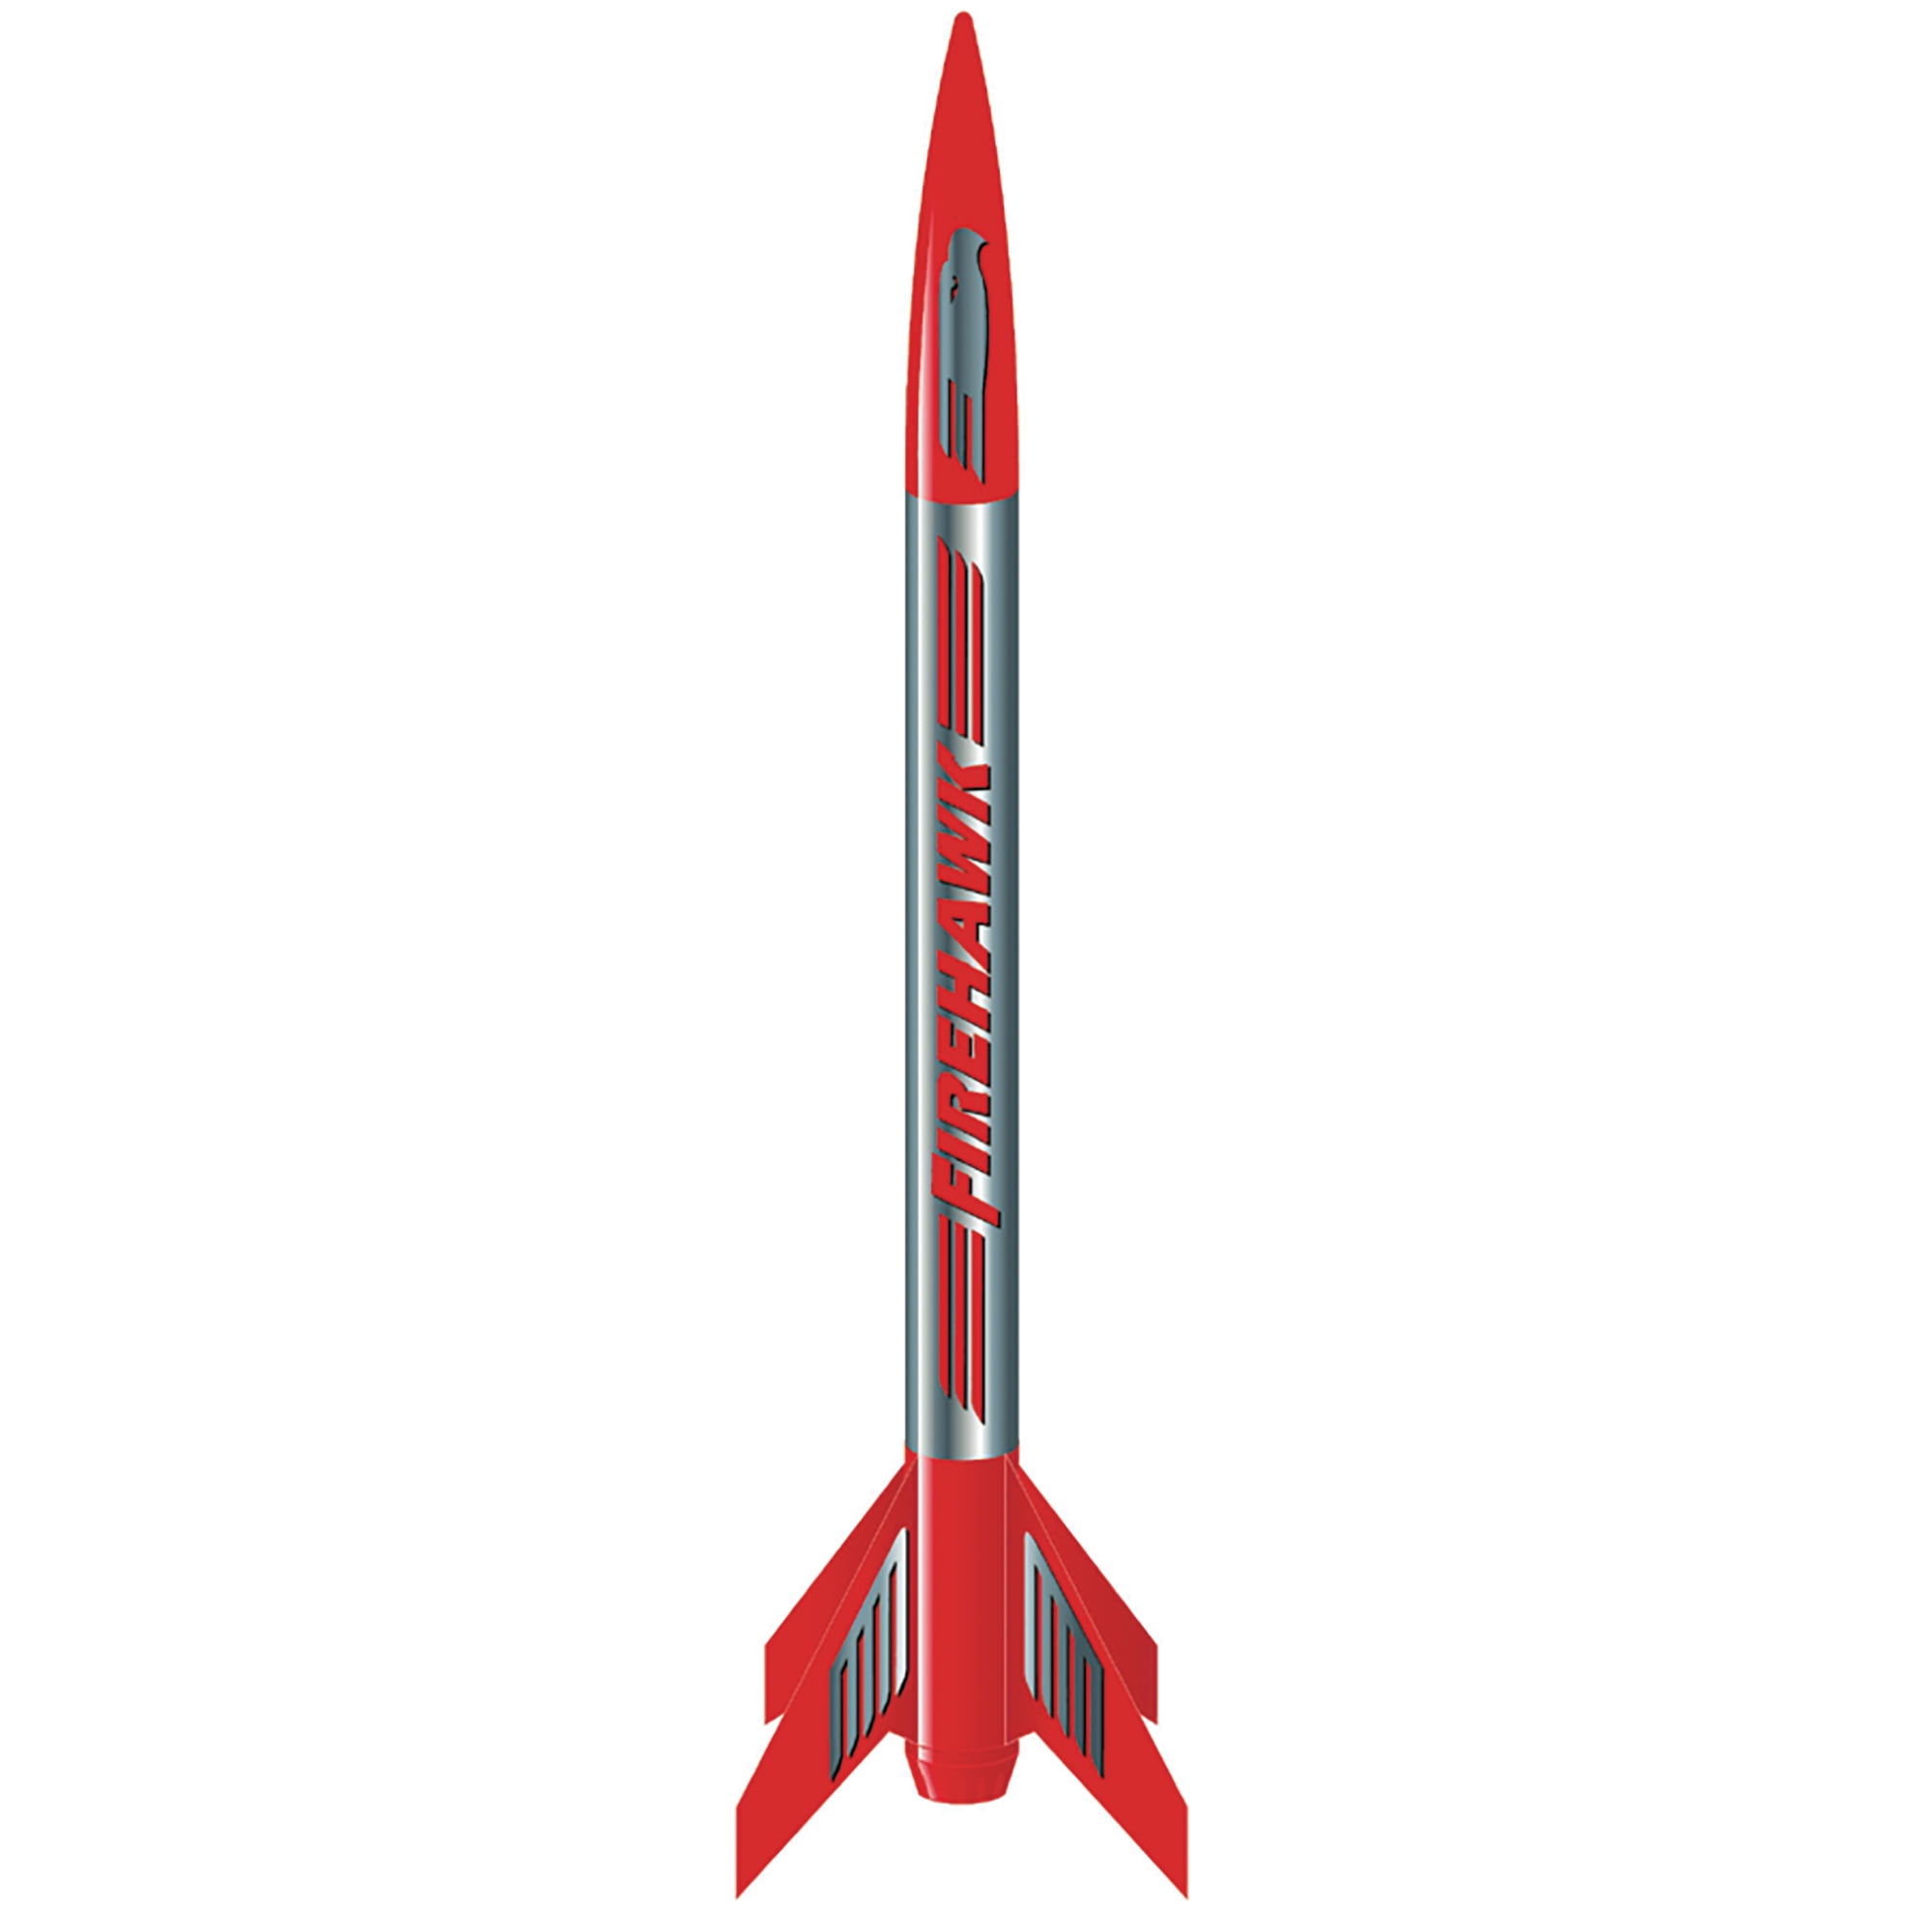 Estes Space Crater Egg Launcher Rocket Kit E2x Est7265 for sale online 